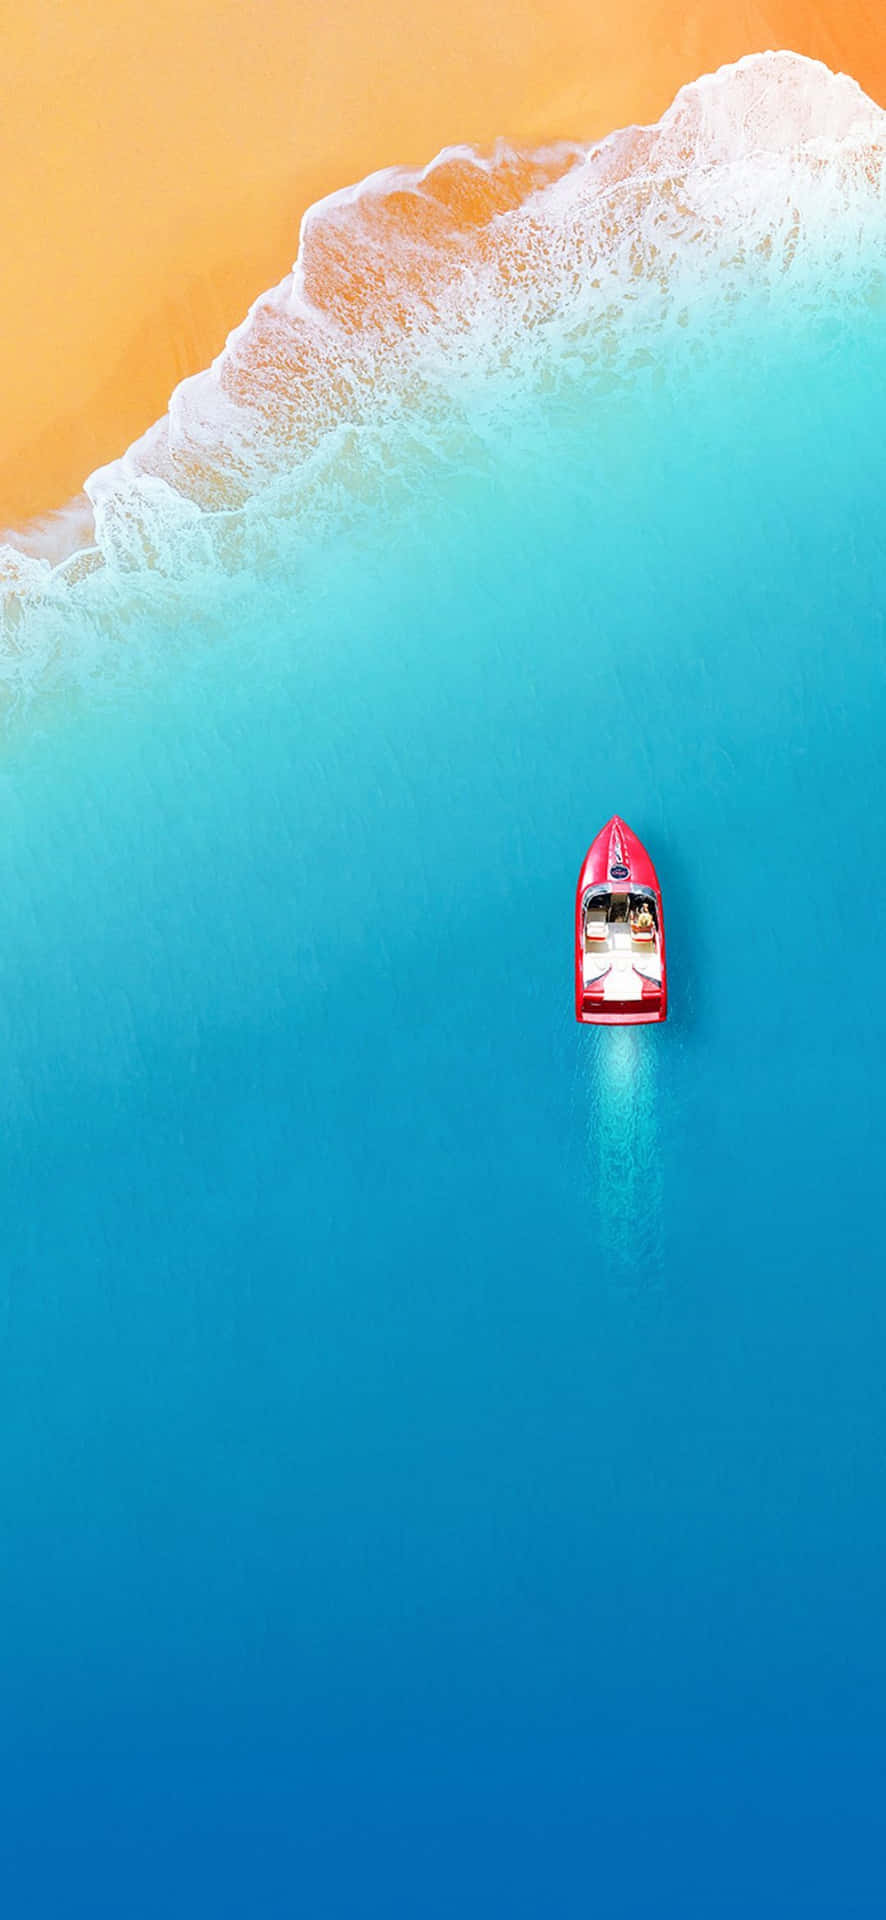 Minimalistaiphone X, Lancha Roja De Alta Velocidad En El Mar. Fondo de pantalla